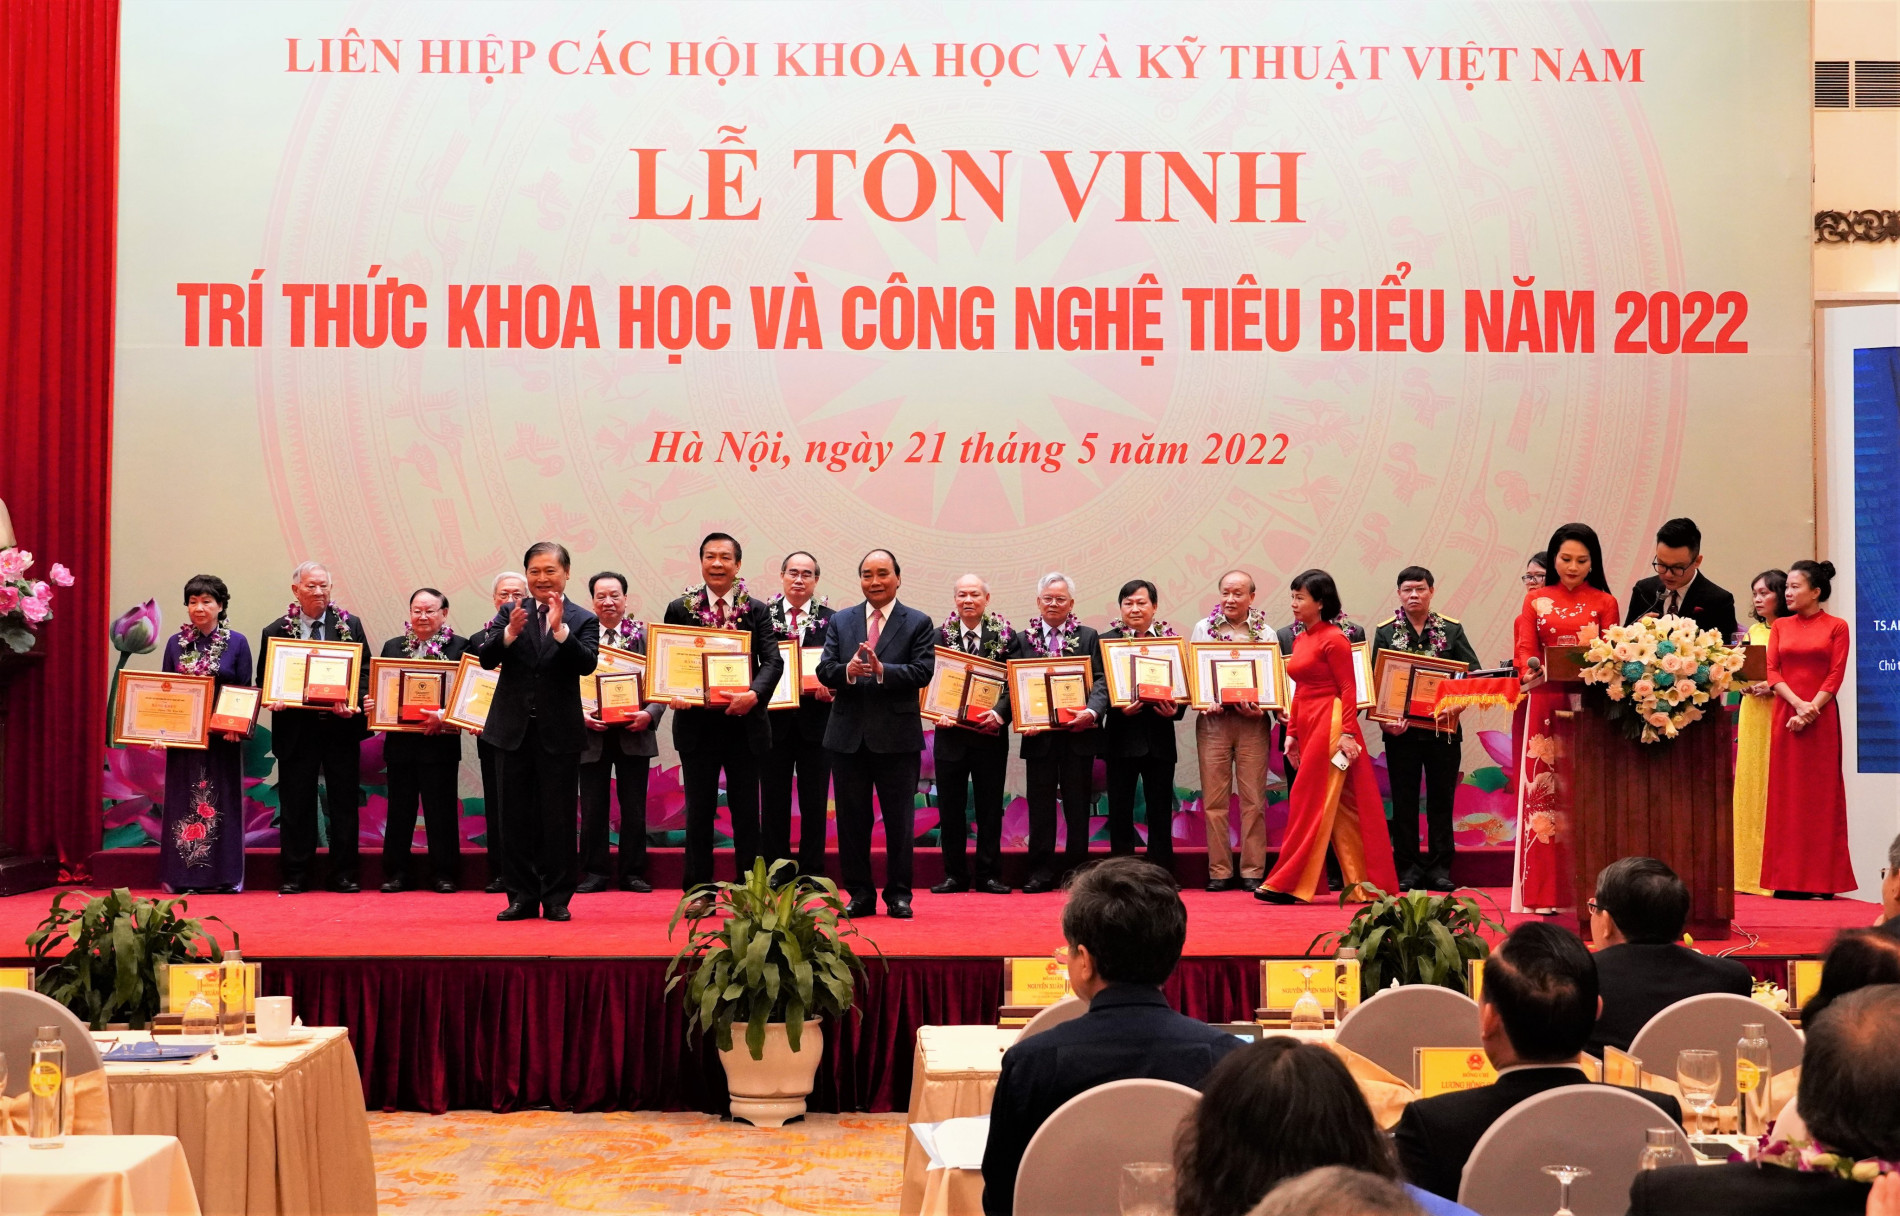 Lễ tôn vinh trí thức khoa học - công nghệ Liên hiệp các hội khoa học và kỹ thuật Việt Nam 2022